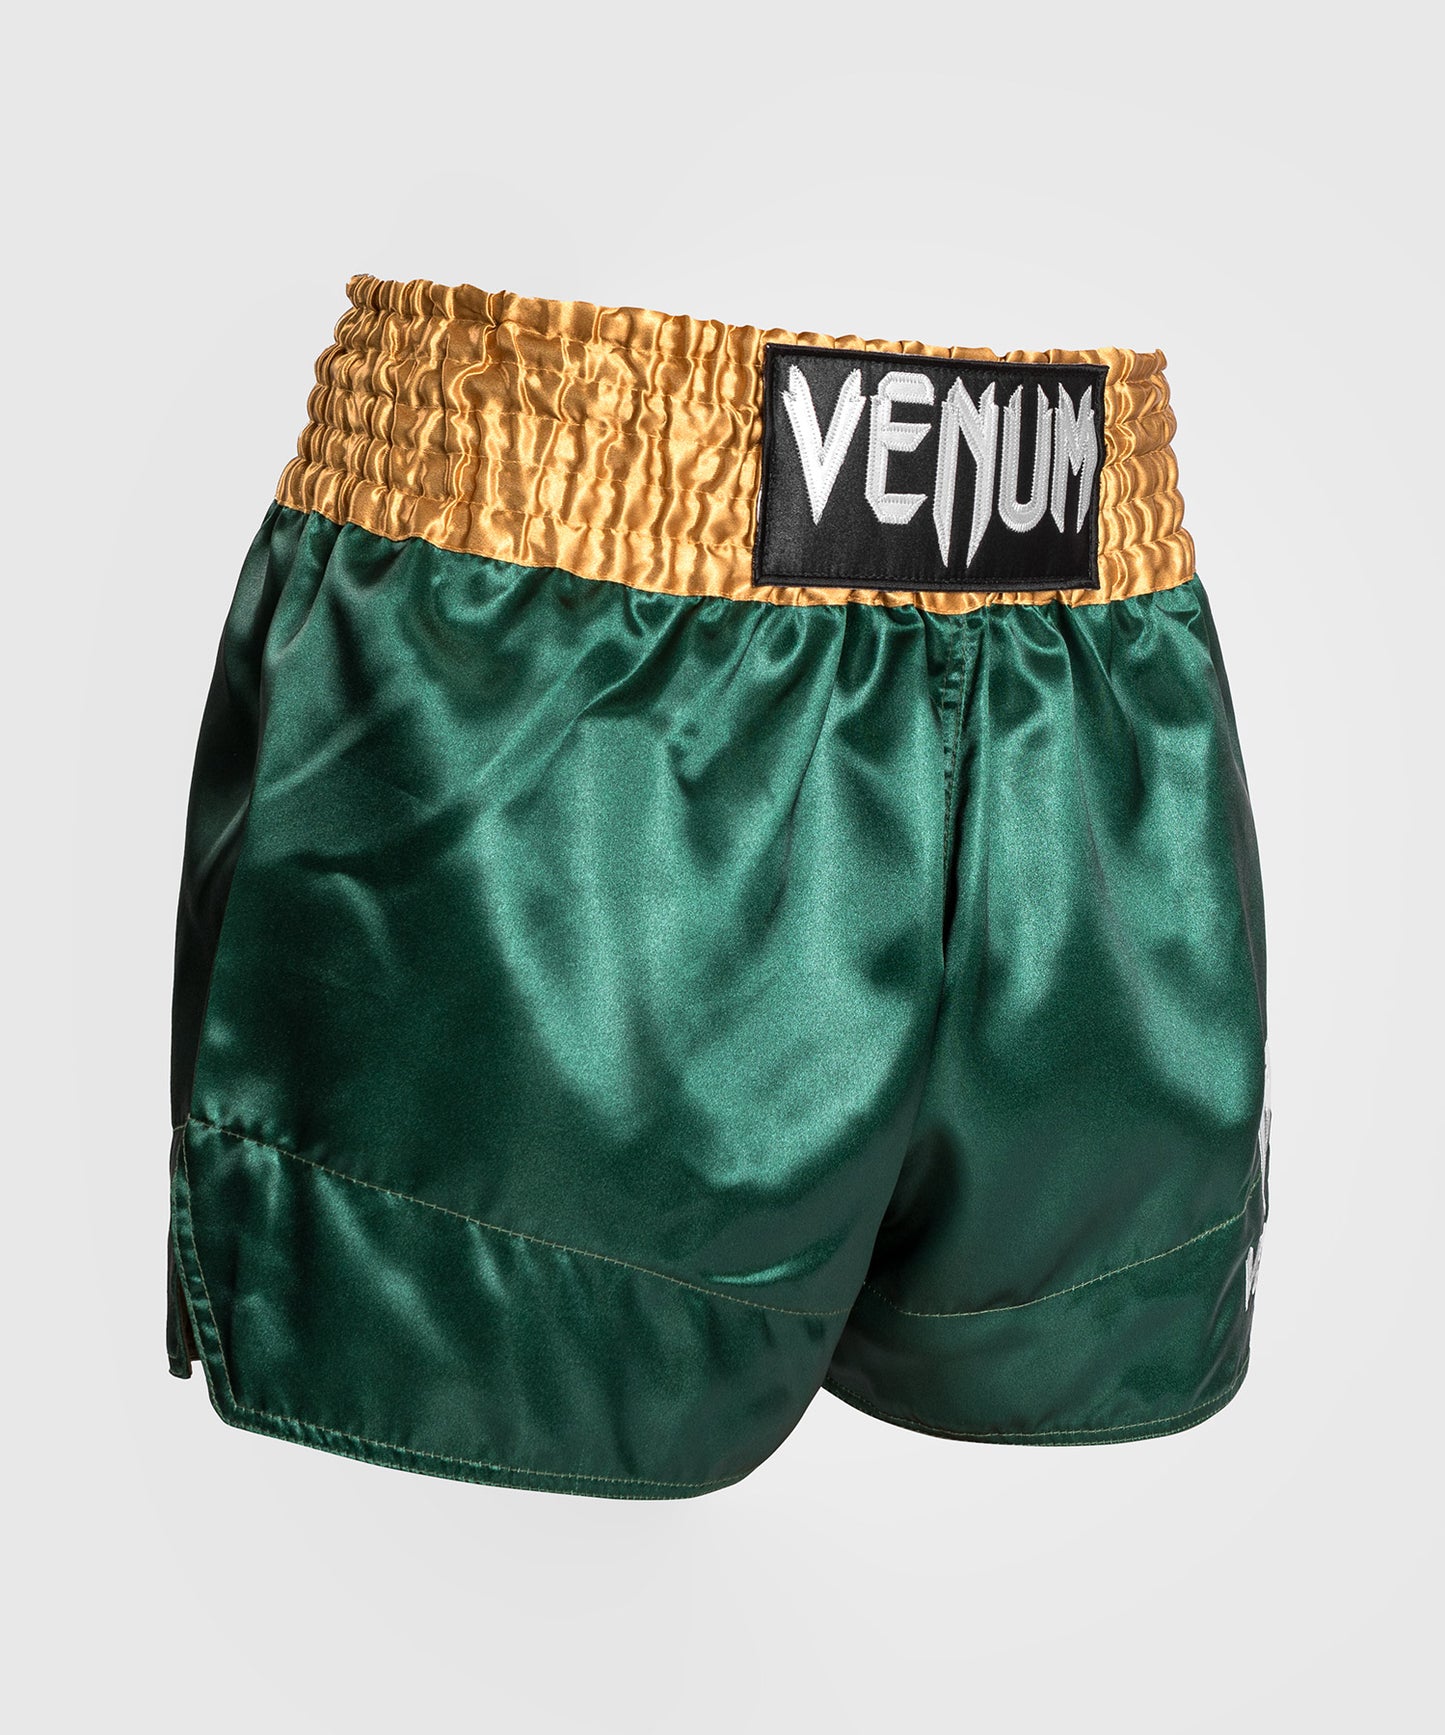 Venum Classic - Muay Thai-short - Groen/Goud/Wit